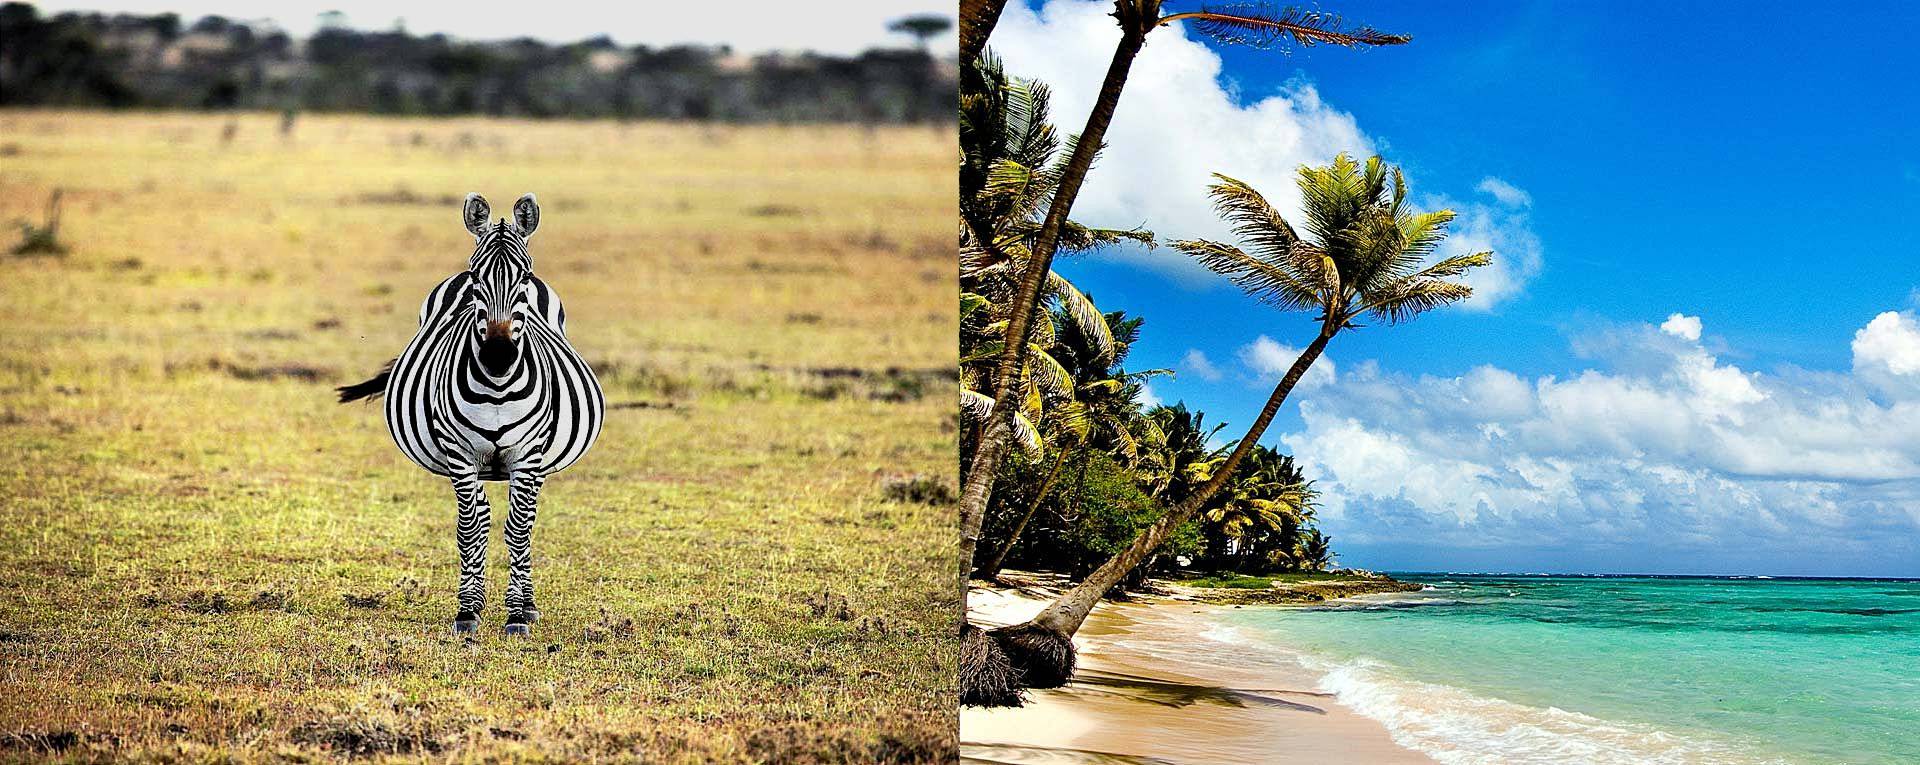 Tanzania Bush and Beach Safari Packages